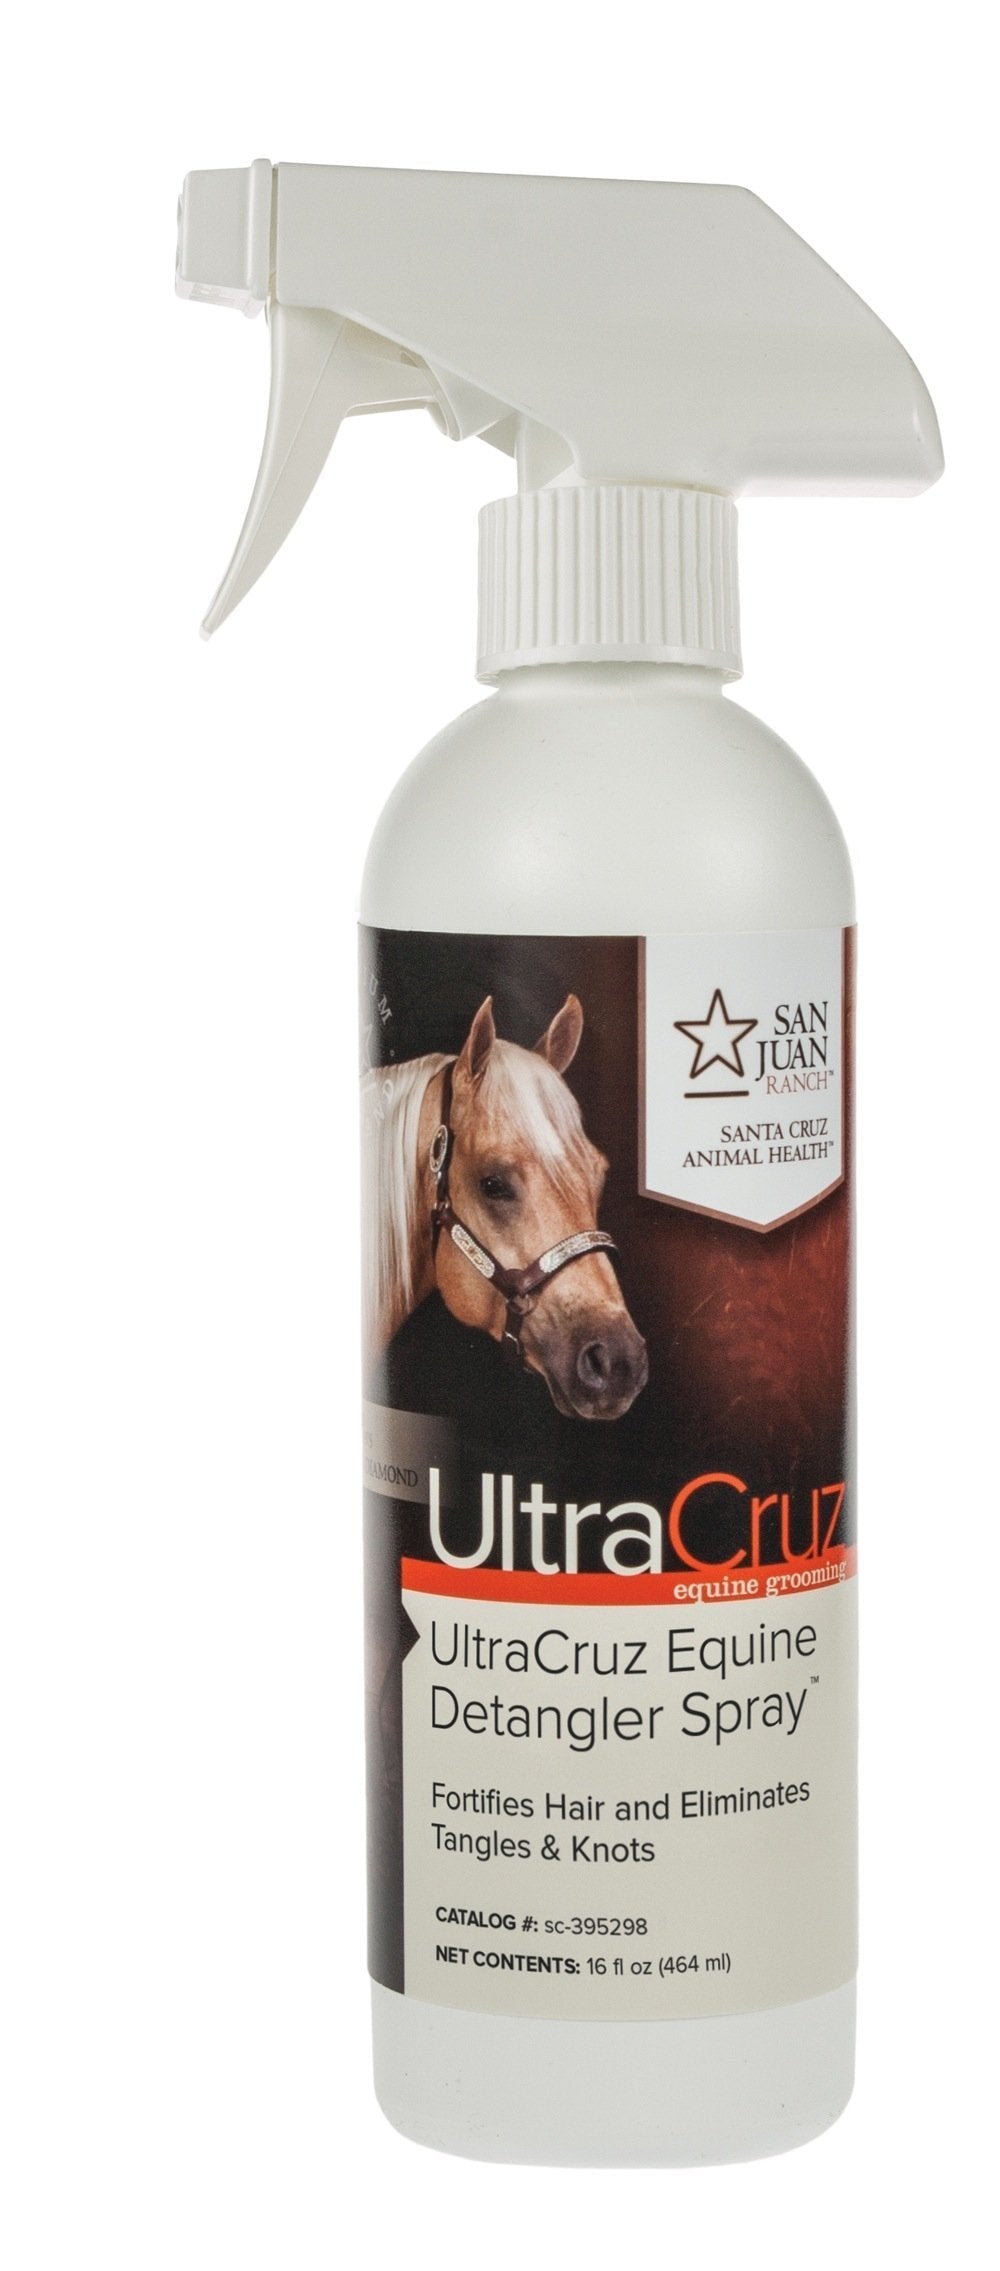 [AUSTRALIA] - UltraCruz Equine Detangler Spray for Horses, 16 oz 